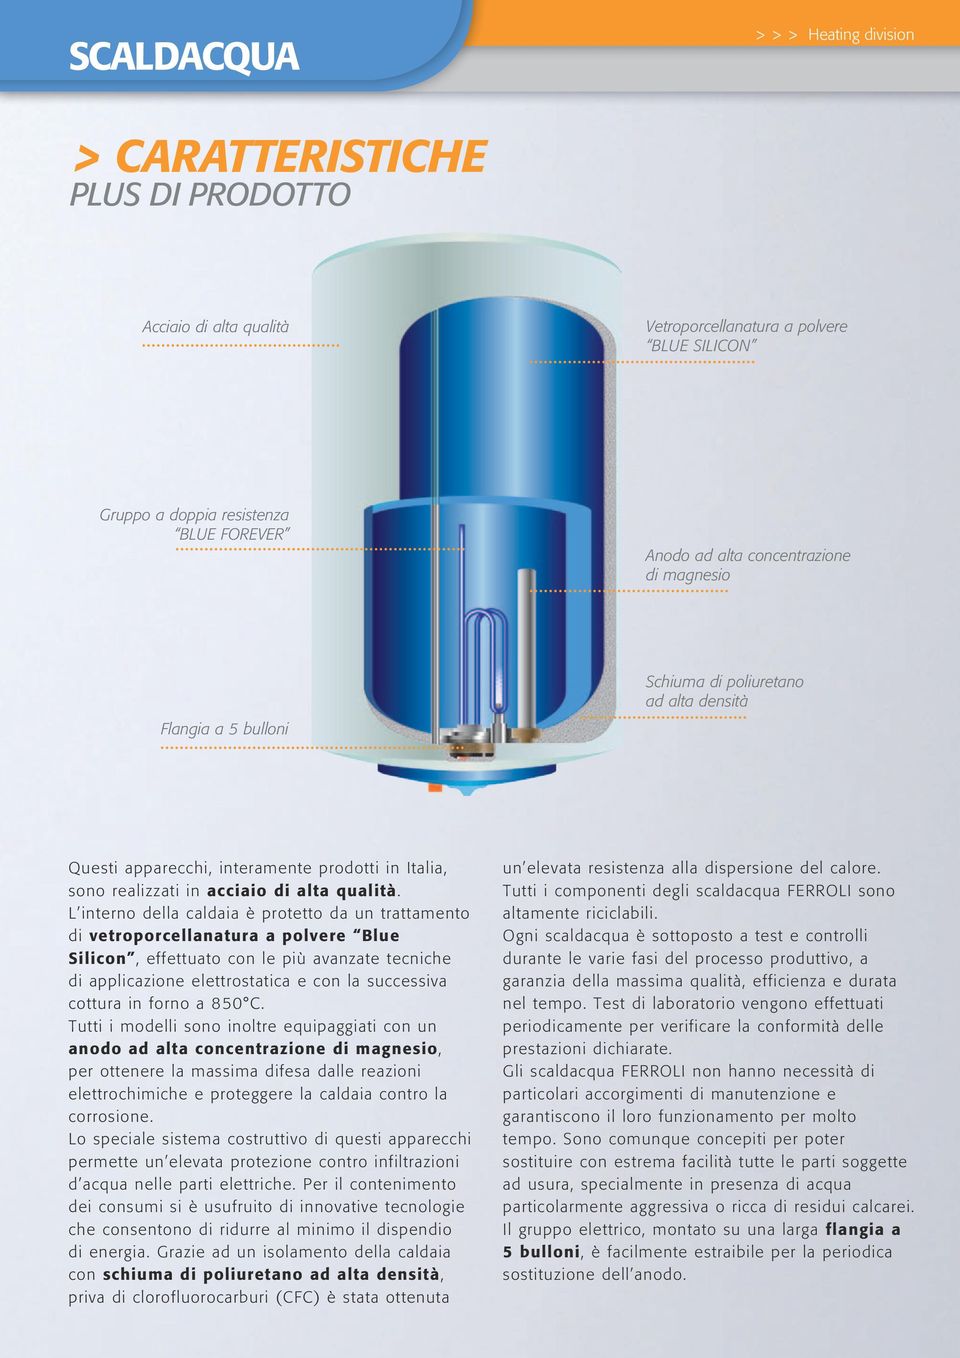 L interno della caldaia è protetto da un trattamento di vetroporcellanatura a polvere Blue Silicon, effettuato con le più avanzate tecniche di applicazione elettrostatica e con la successiva cottura